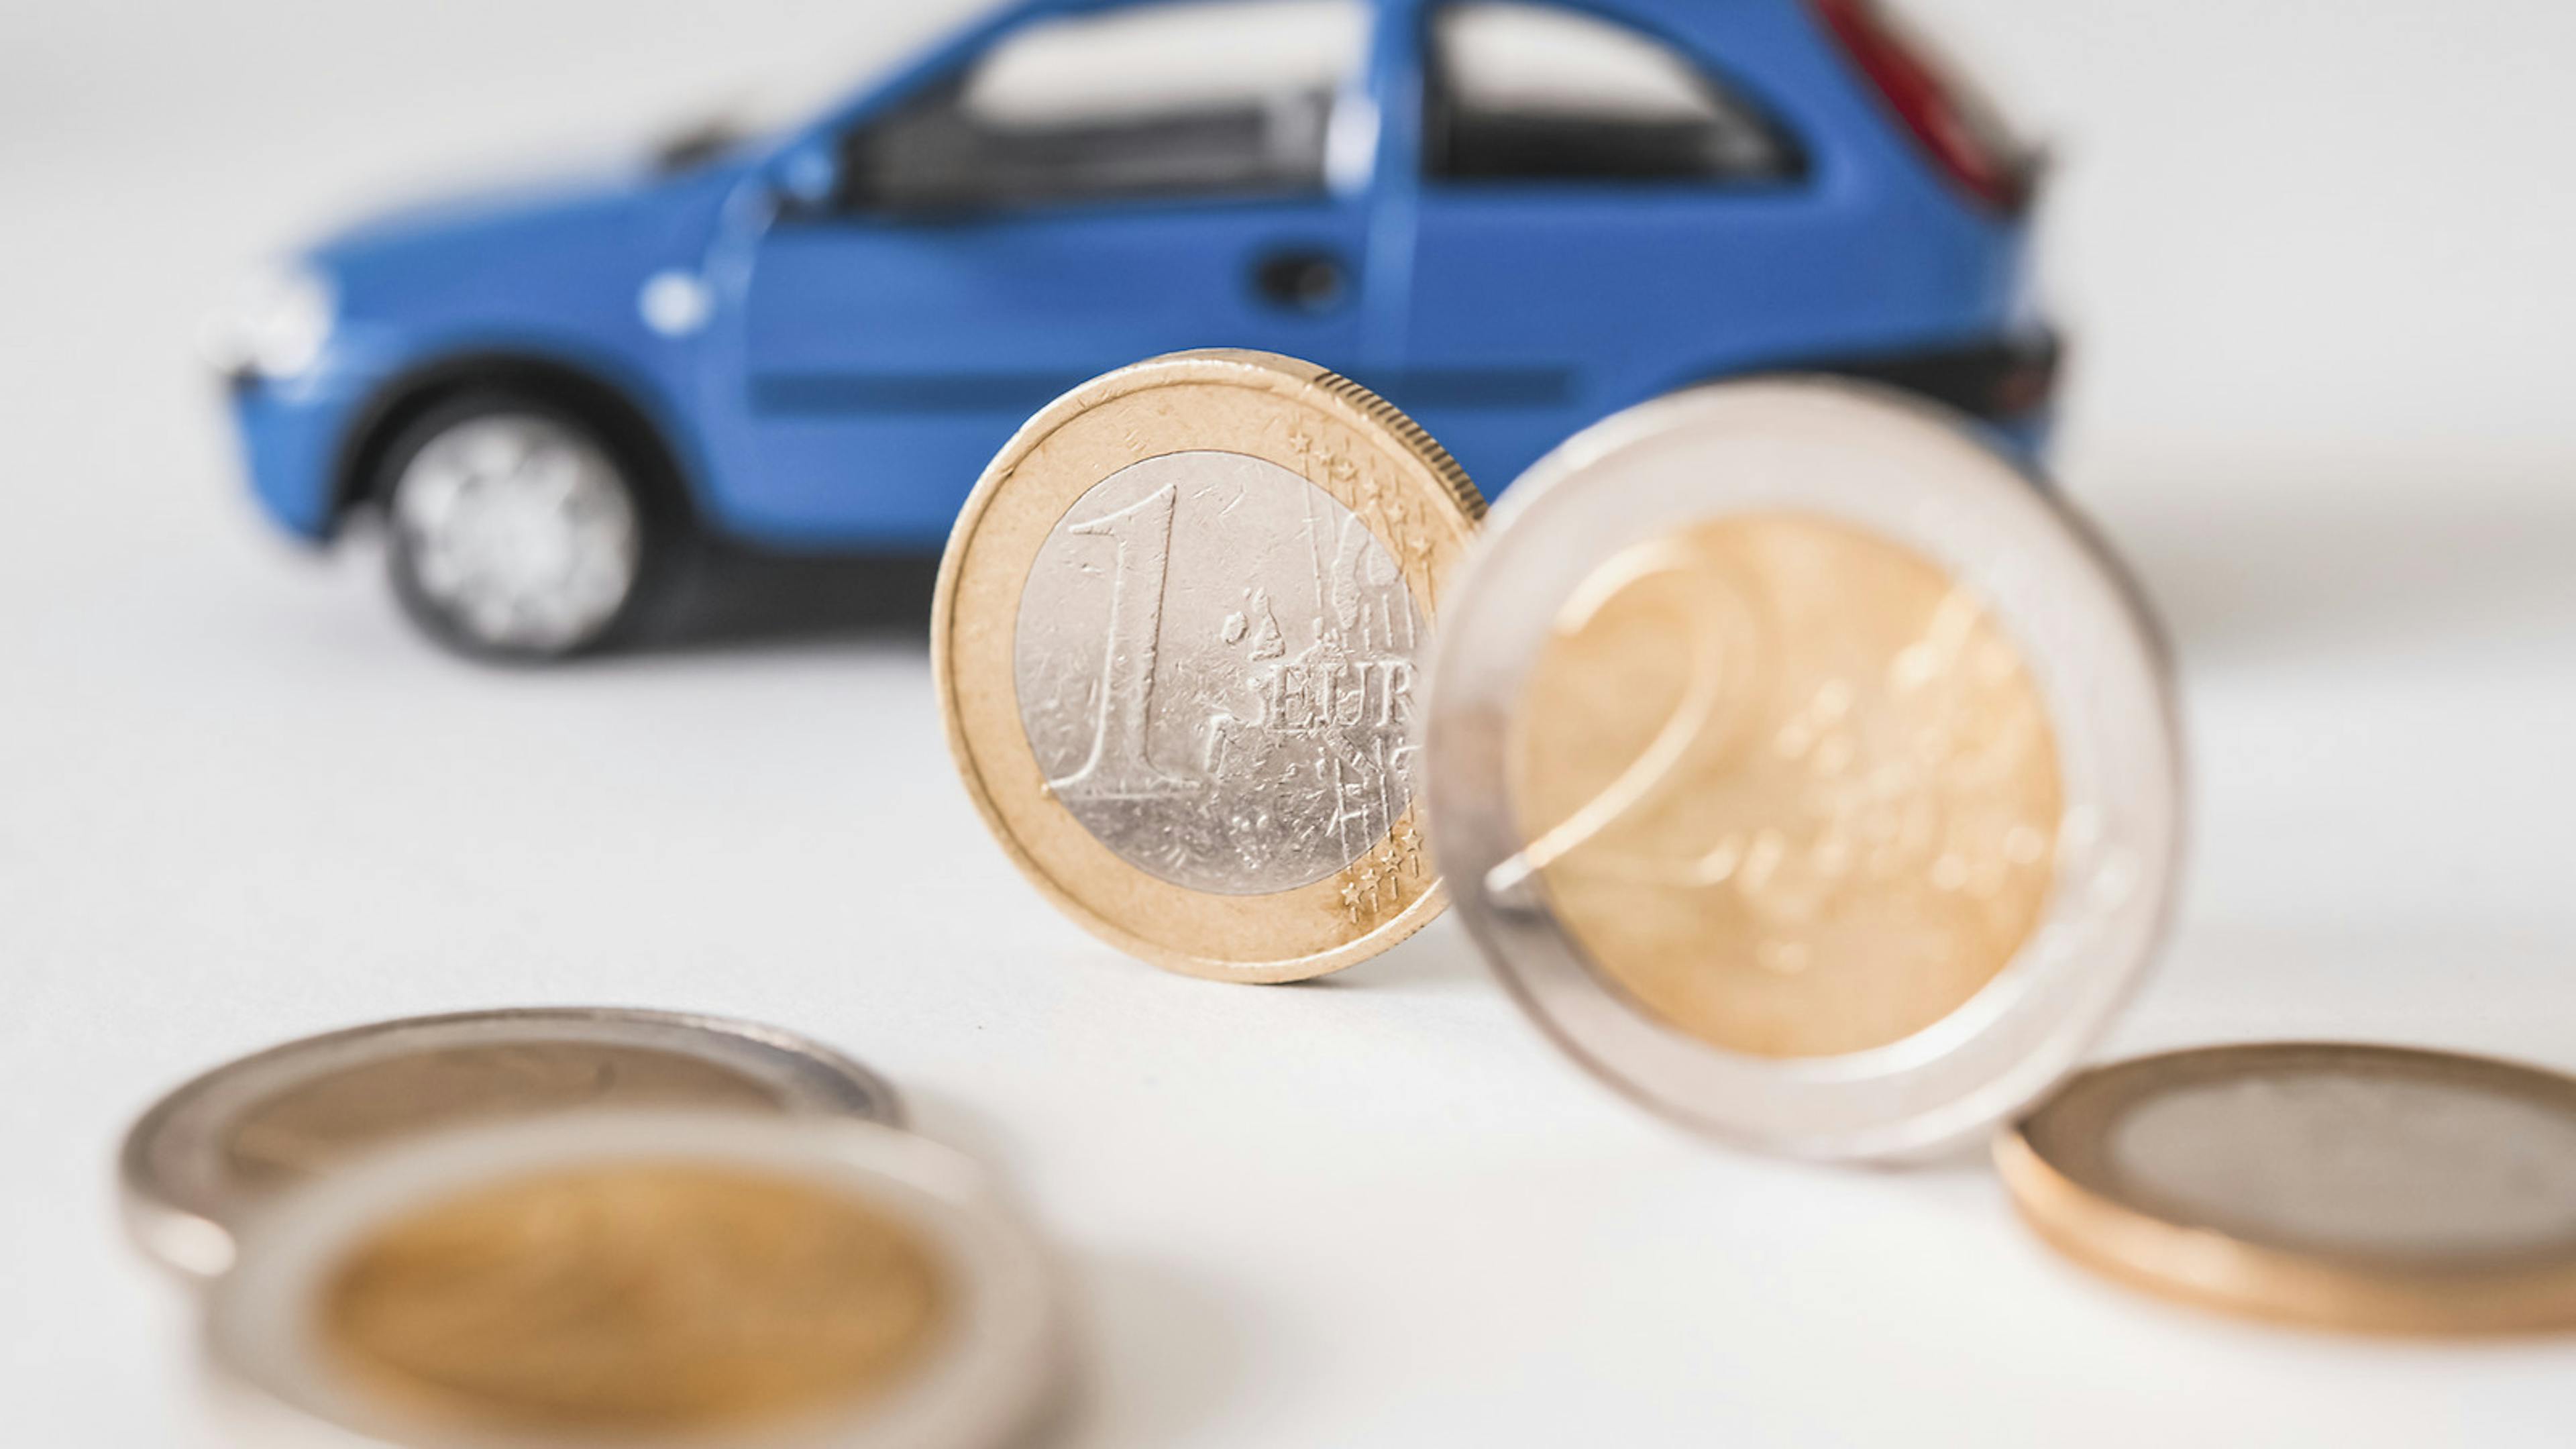 Eine 1-Euro und eine 2-Euro-Münze stehen aufrecht vor einem blauen Modellauto eines Kleinwagens